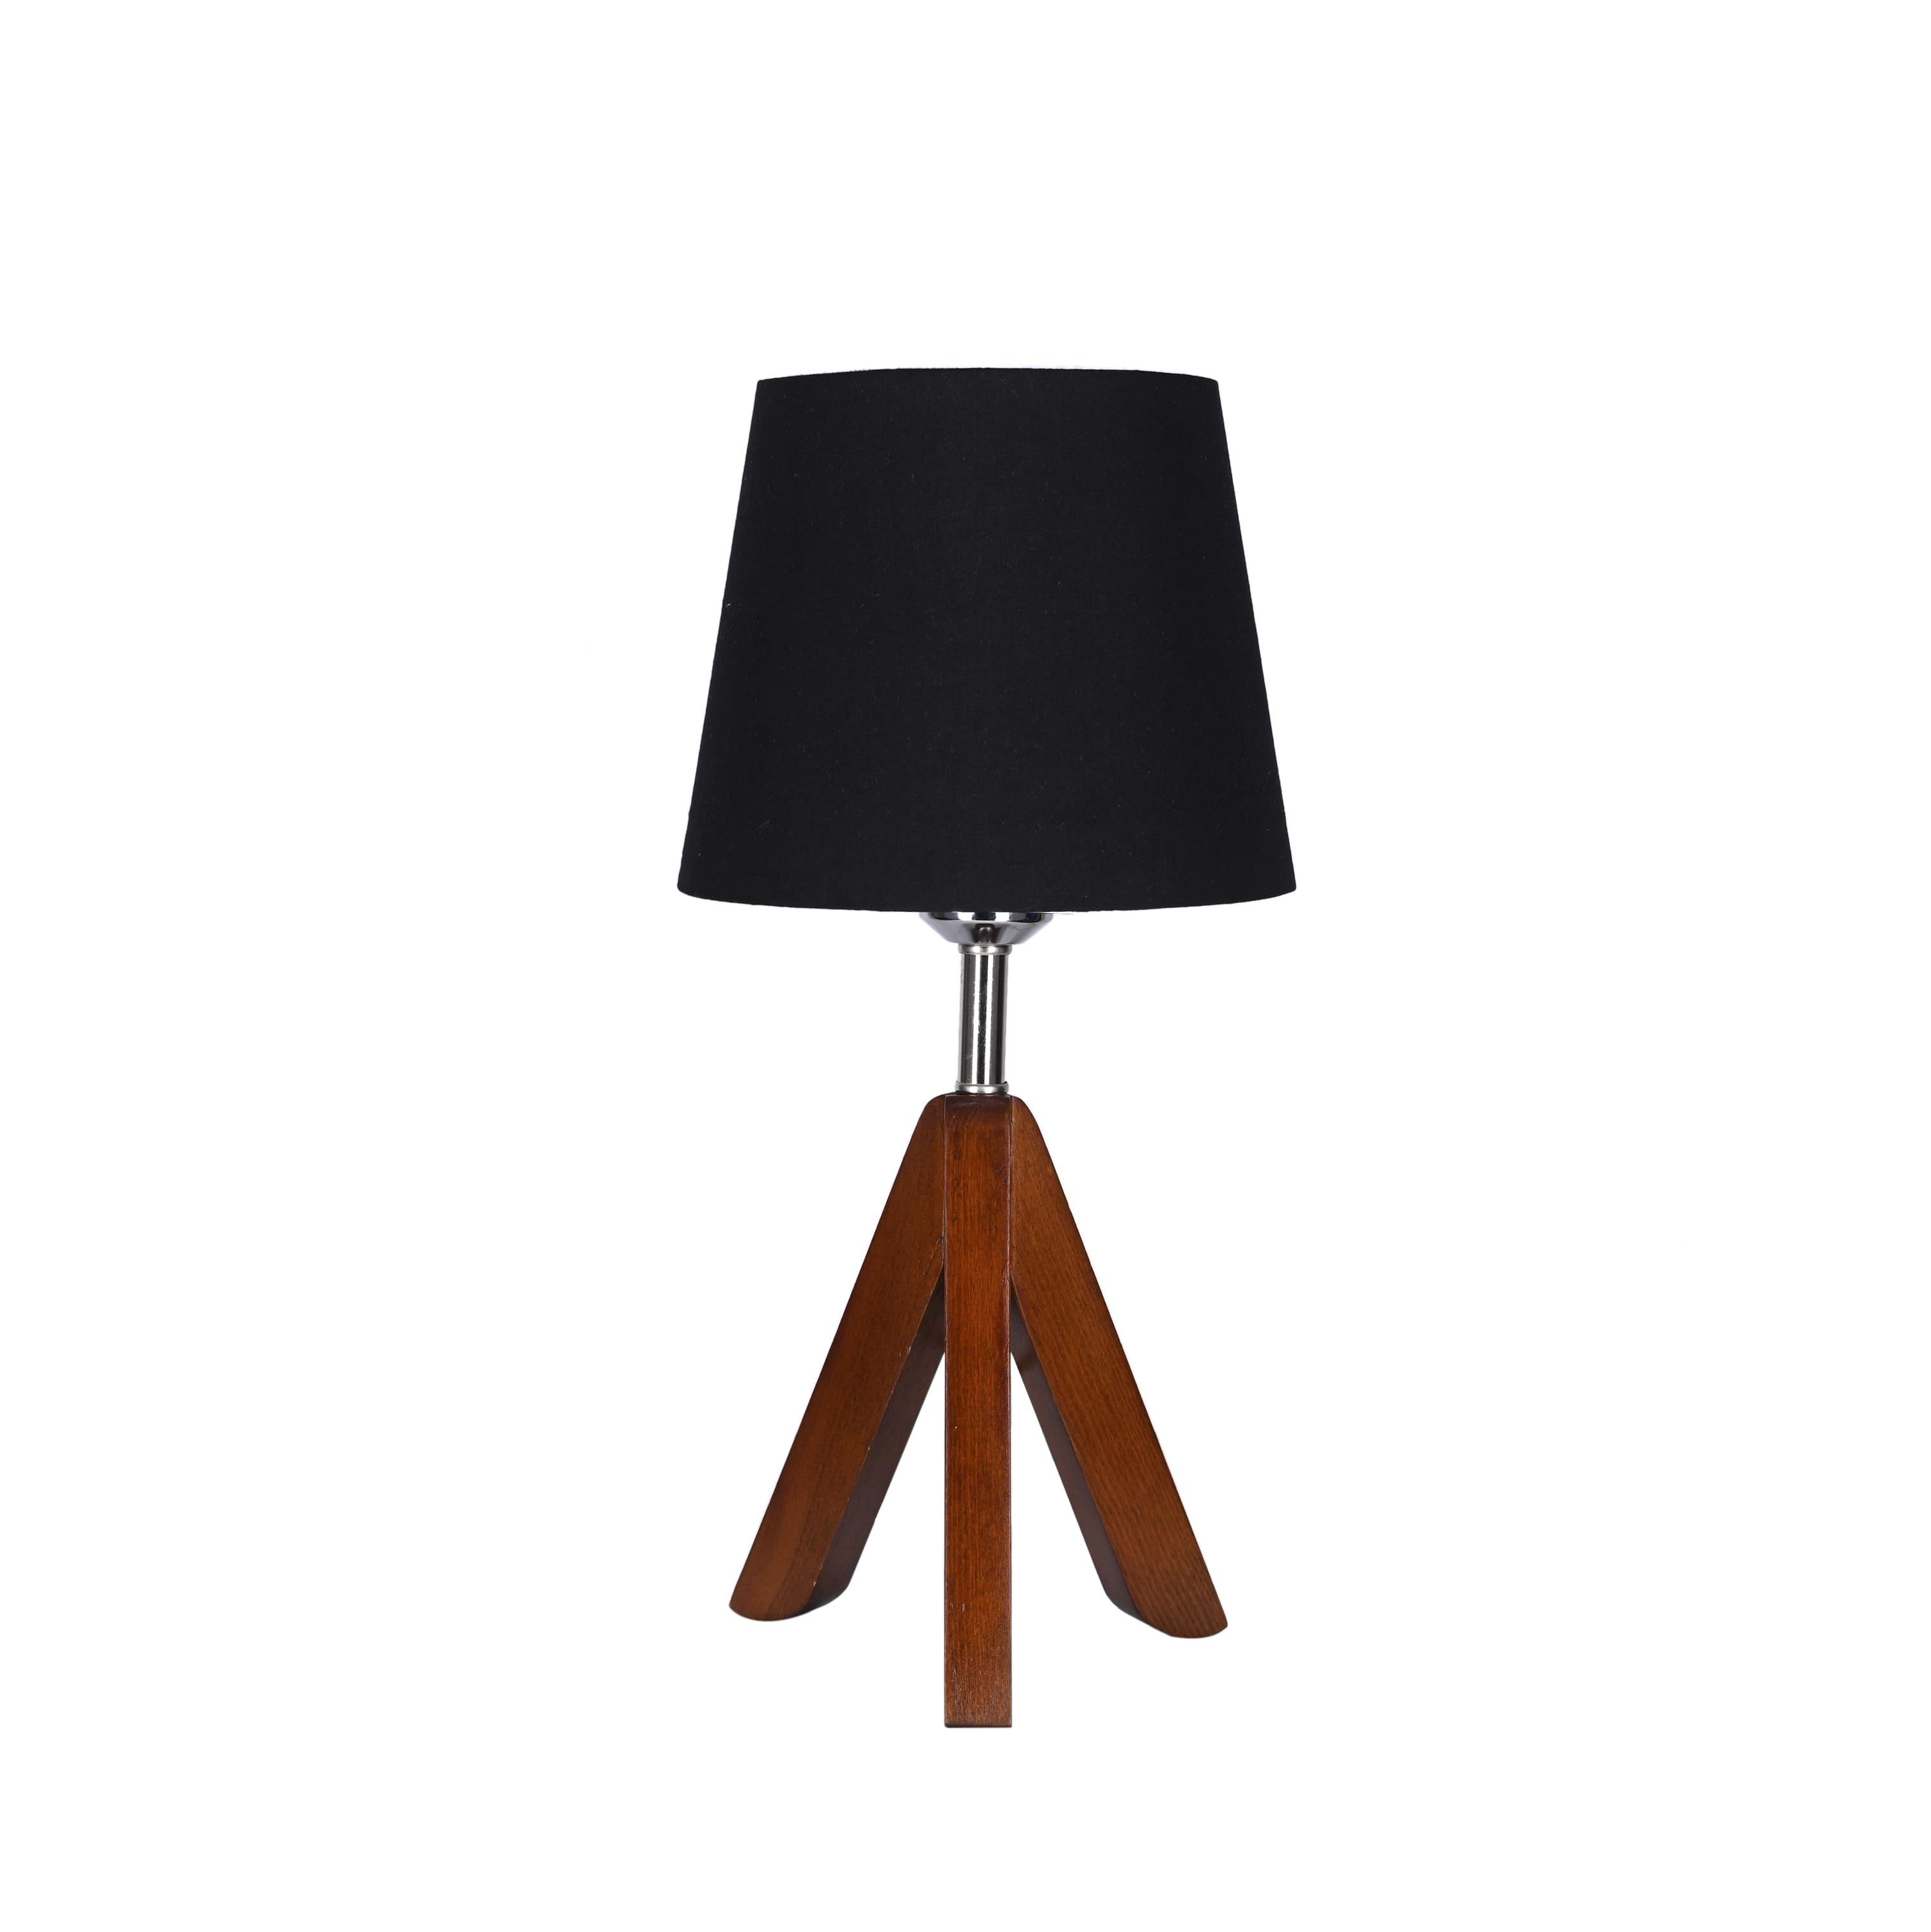 El Rawda Black Modern Wooden Desk Lamp 43×43 cm - 1 Lamp - RL-TL-A-045